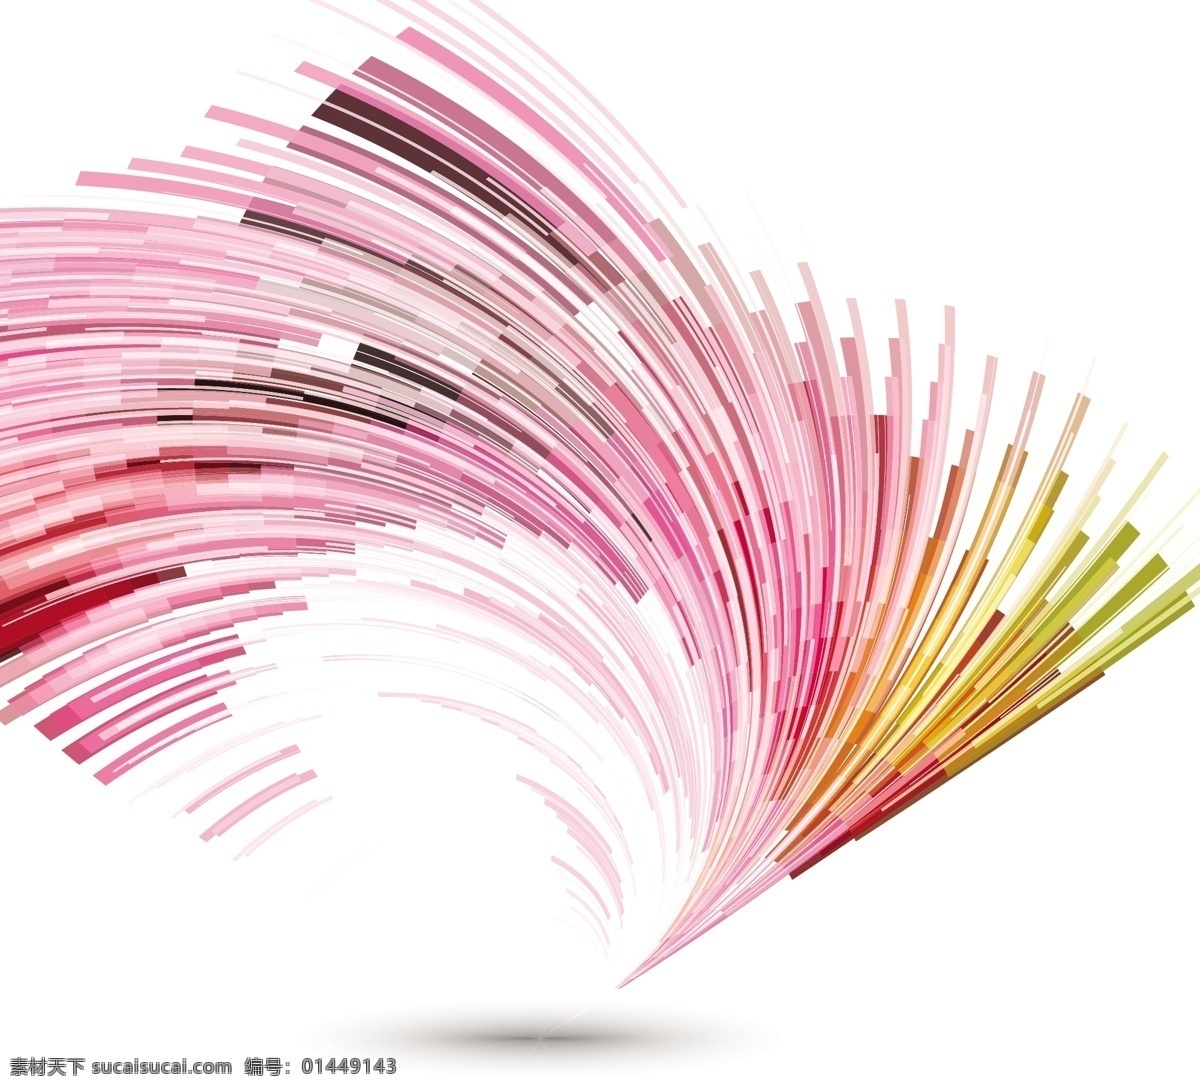 背景 抽象 灯光 粉色壁纸 漩涡 数字 现代的 螺旋形的 粉红色的背景 抽象的设计 现代的背景 数字背景 背景设计 旋转 白色